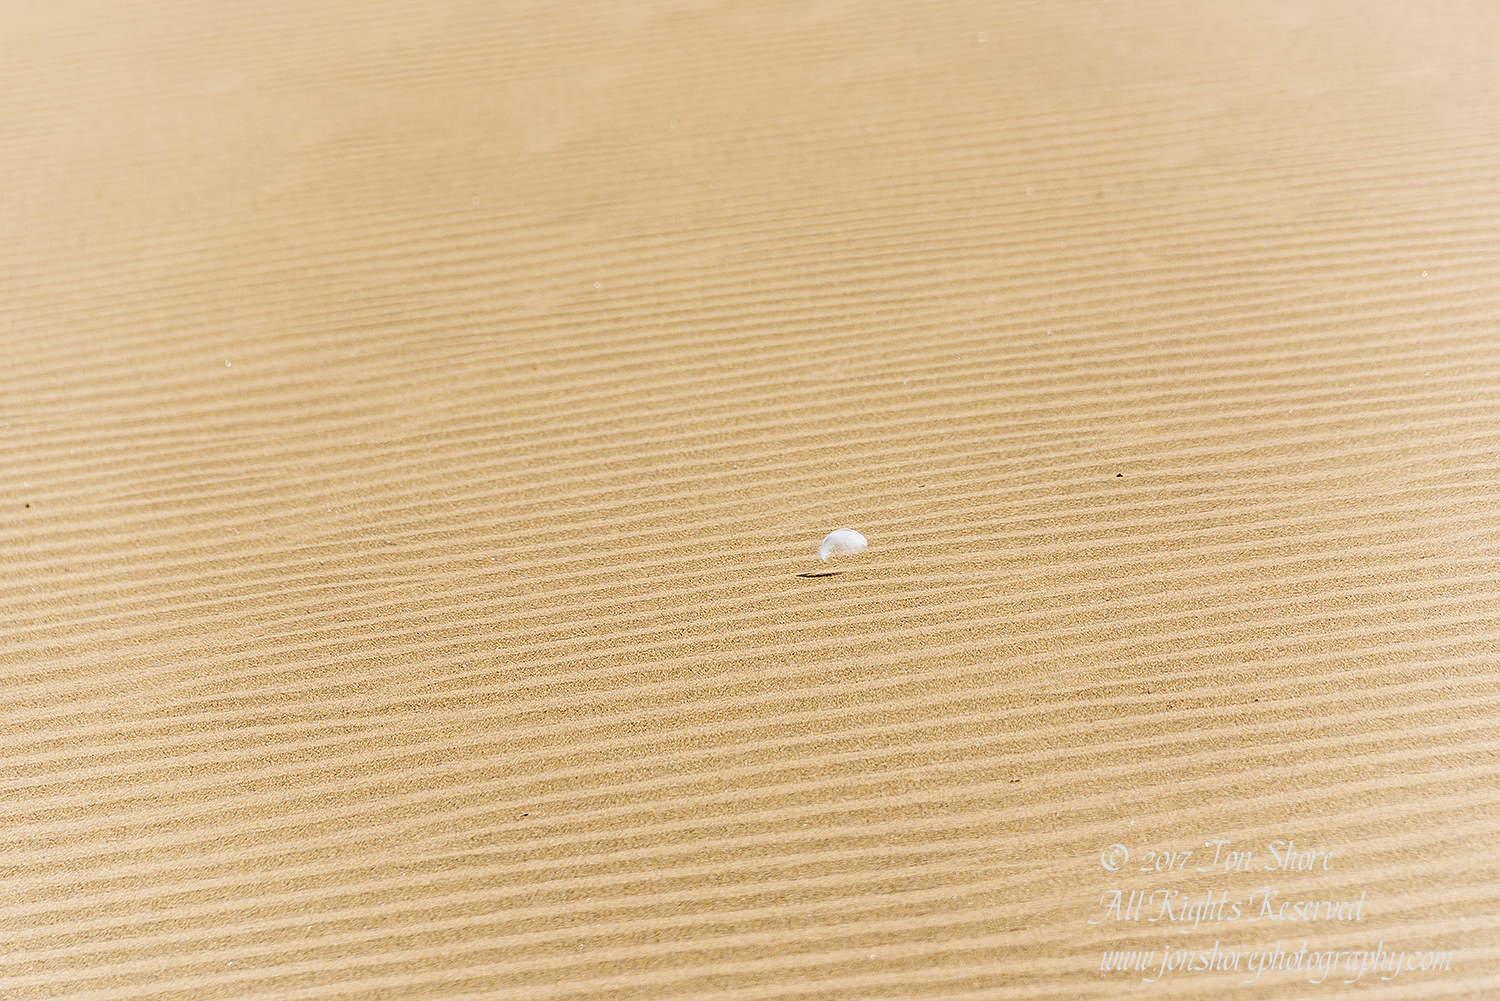 Desert at Maspalomas, Gran Canaria. Nikkor 300mm